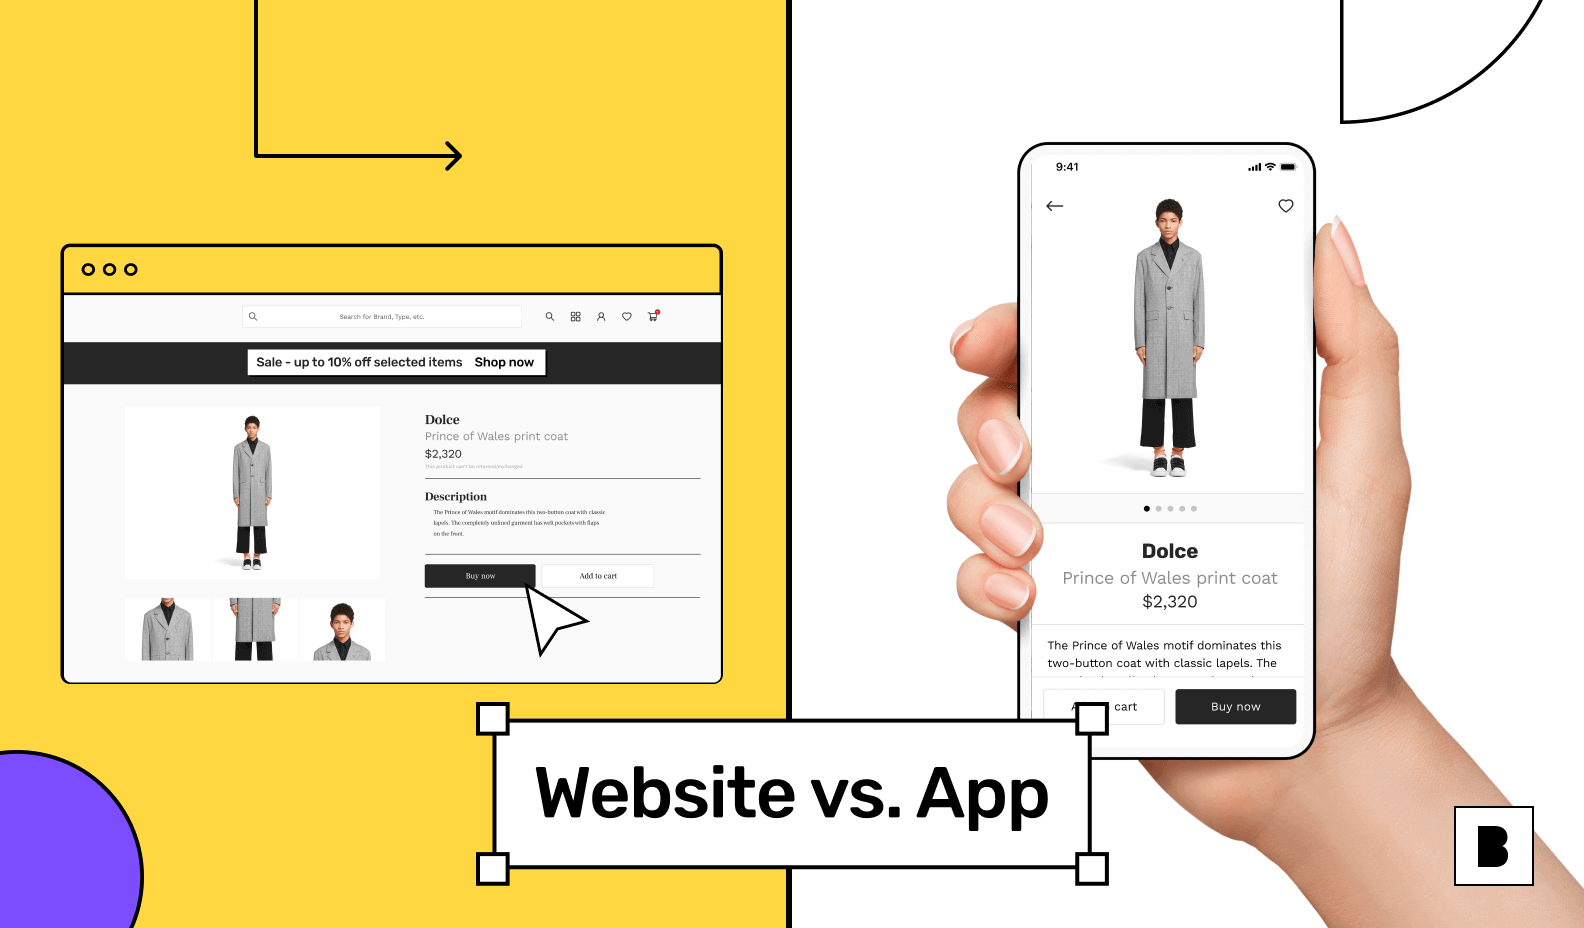 Website vs app